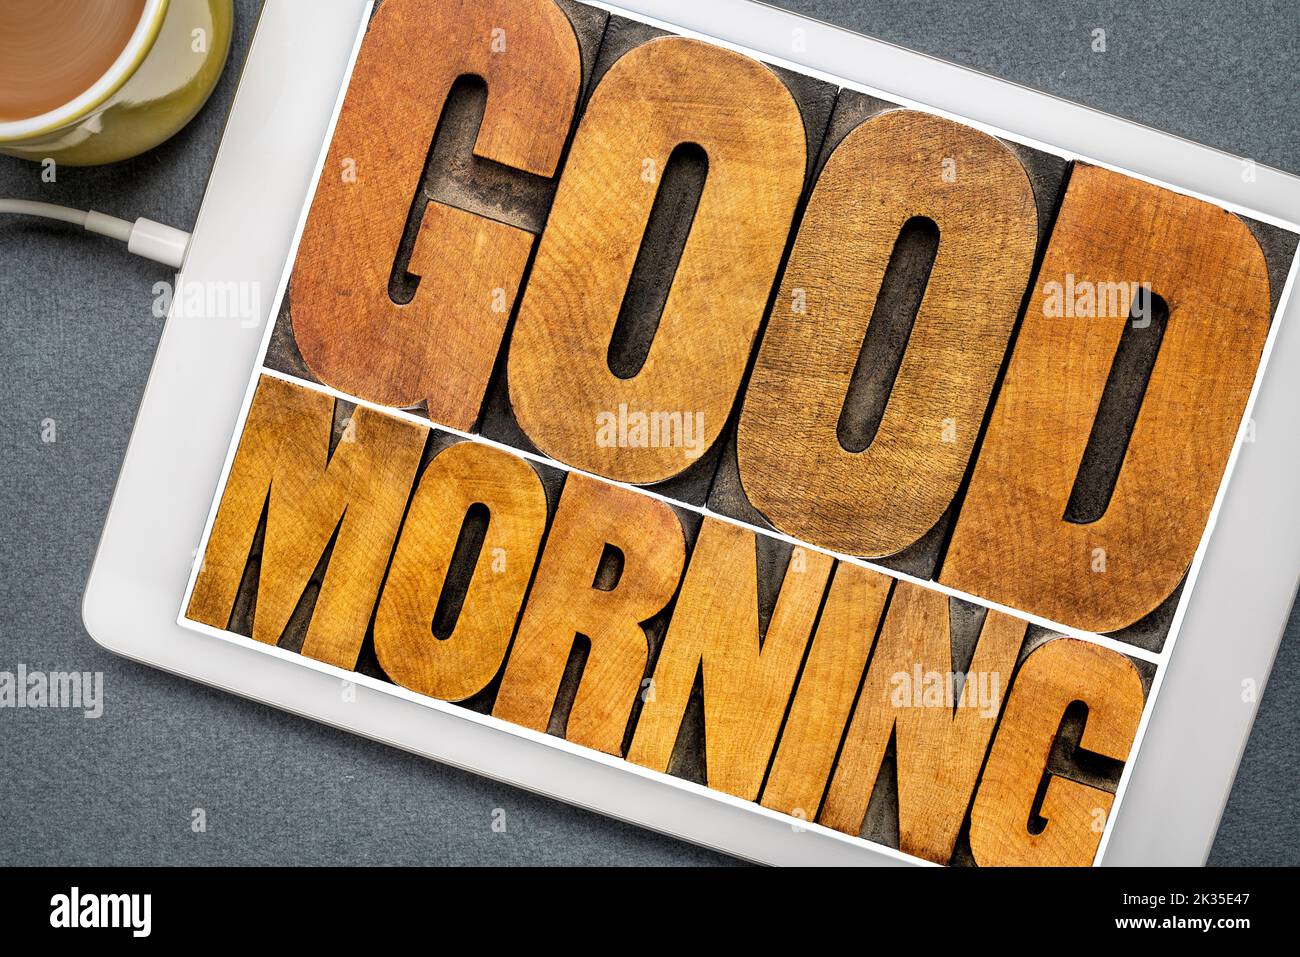 Buona mattina parola abstract - testo in rilievografia vintage tipo legno blocchi di stampa su una tavoletta digitale con una tazza di caffè Foto Stock